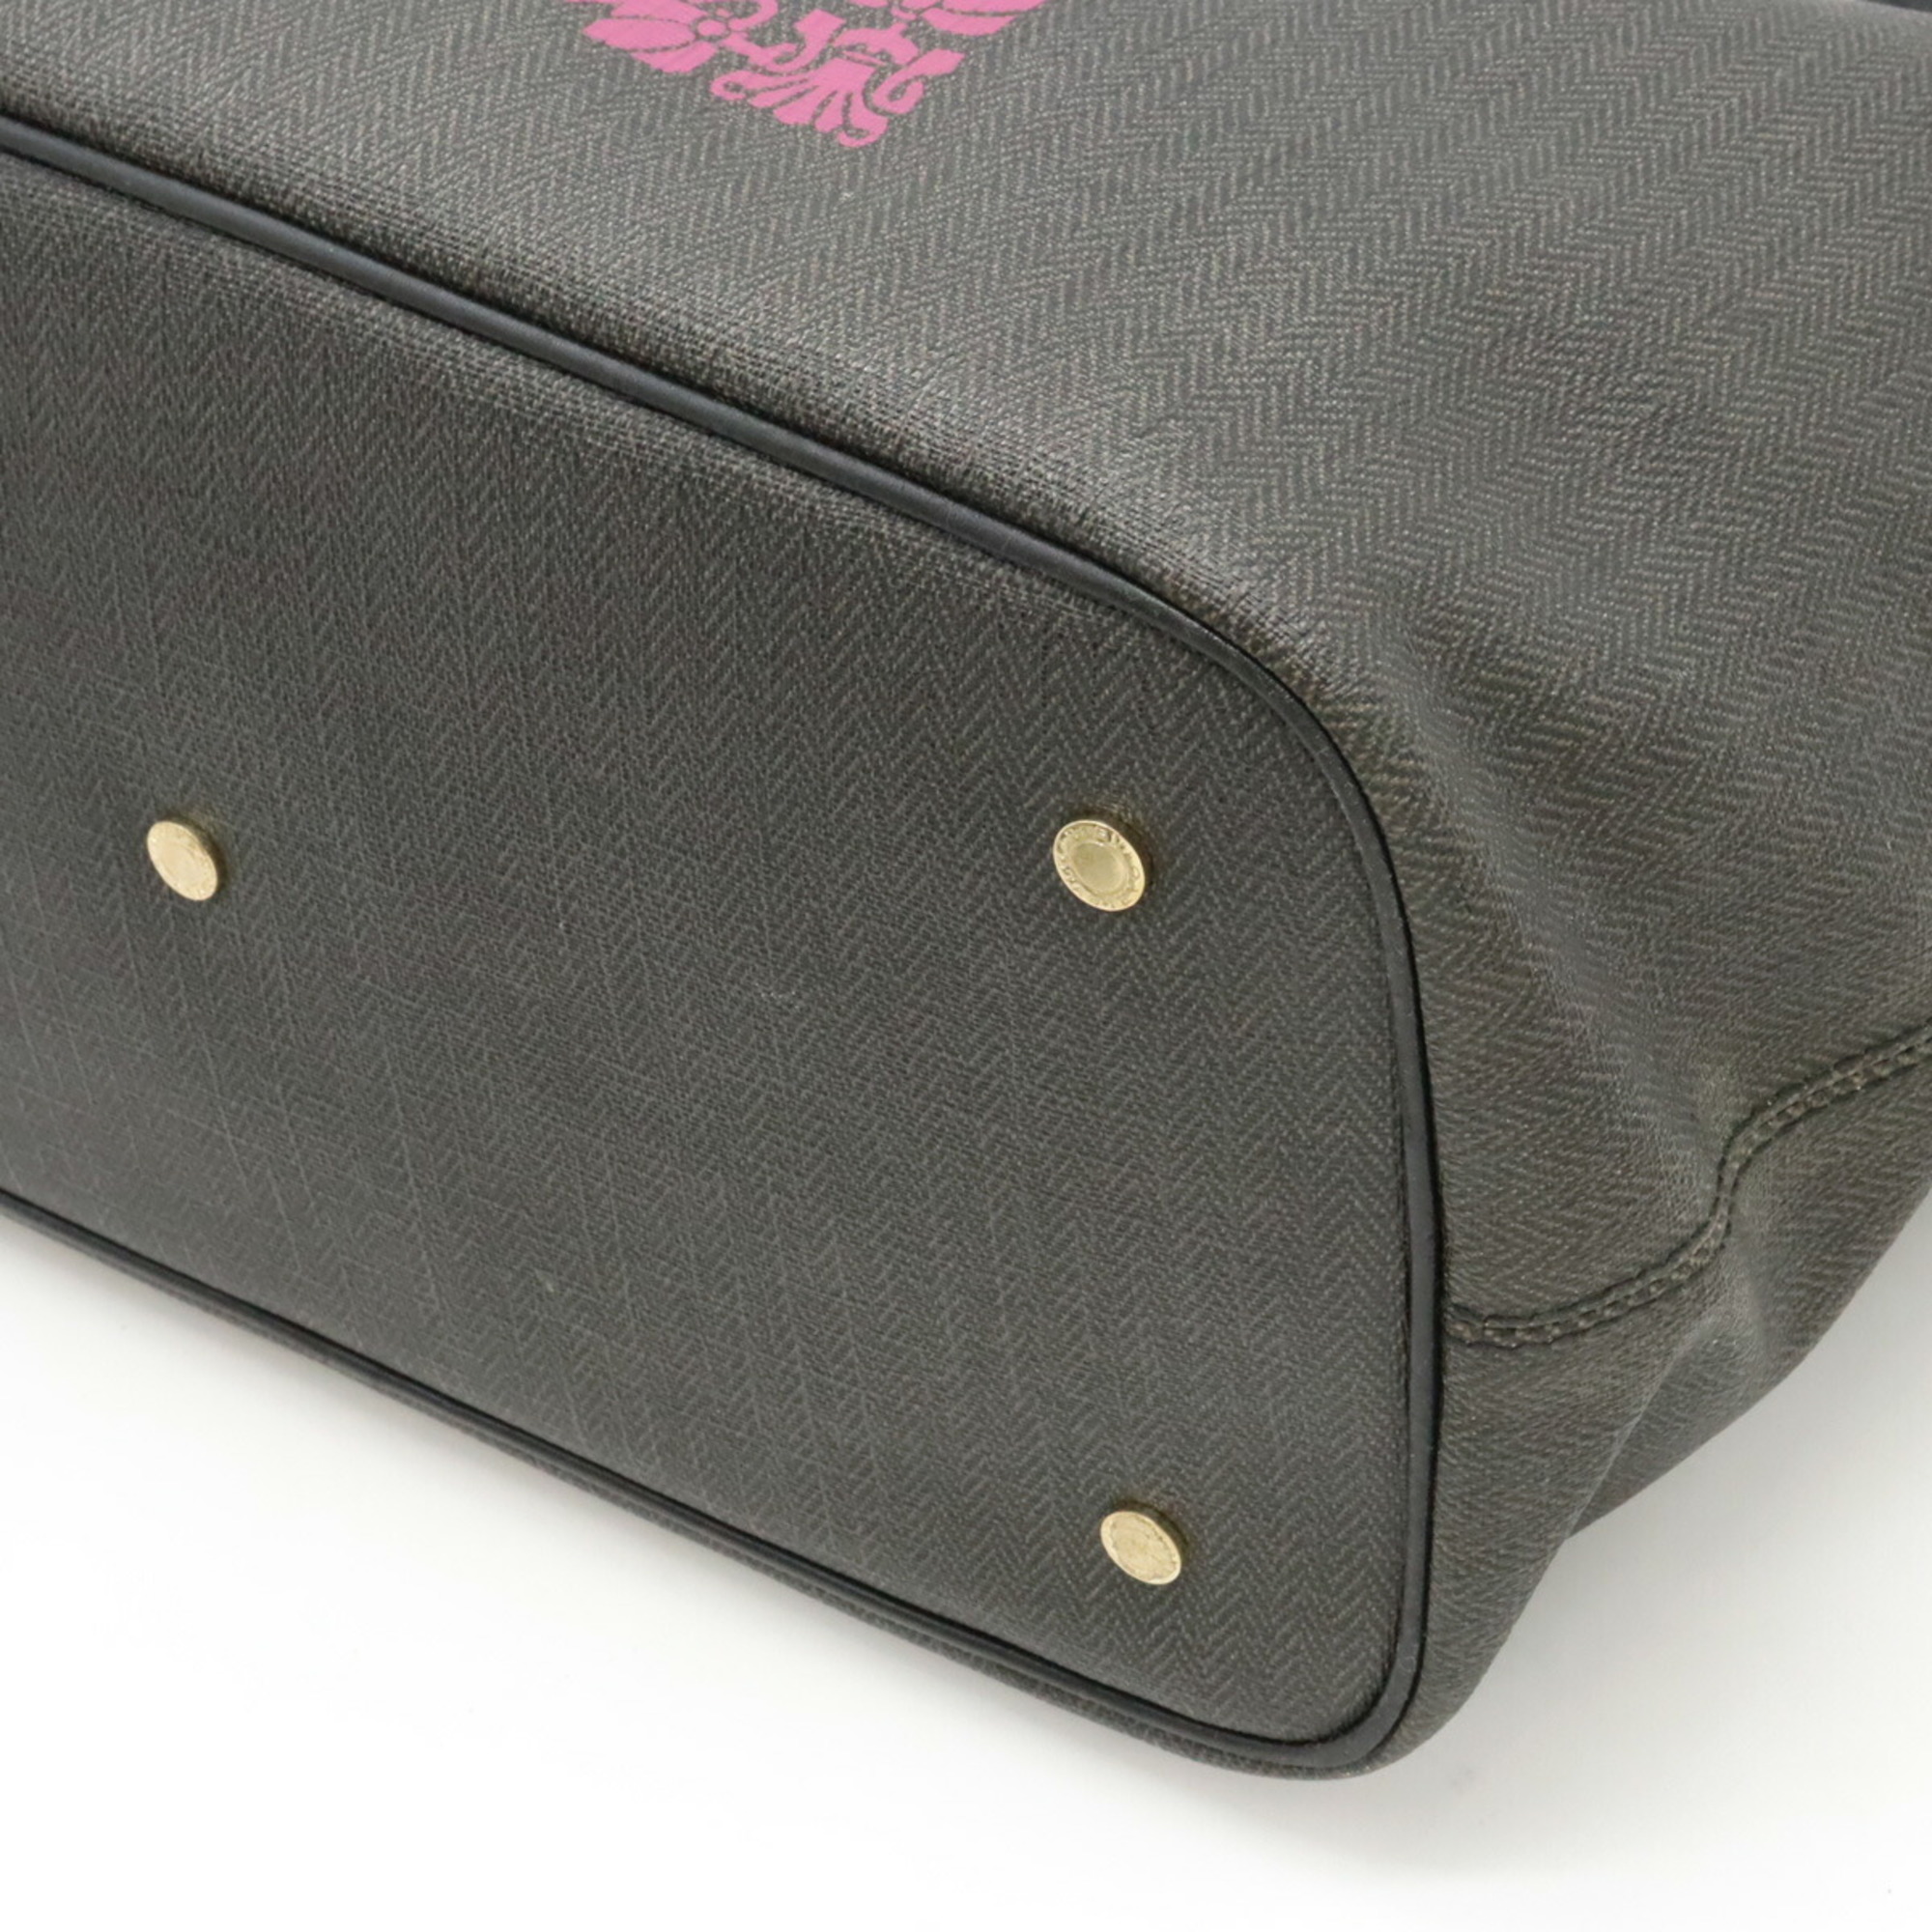 BVLGARI COLLEZIONE Tote Bag Shoulder PVC Leather Dark Gray Black Pink 32529